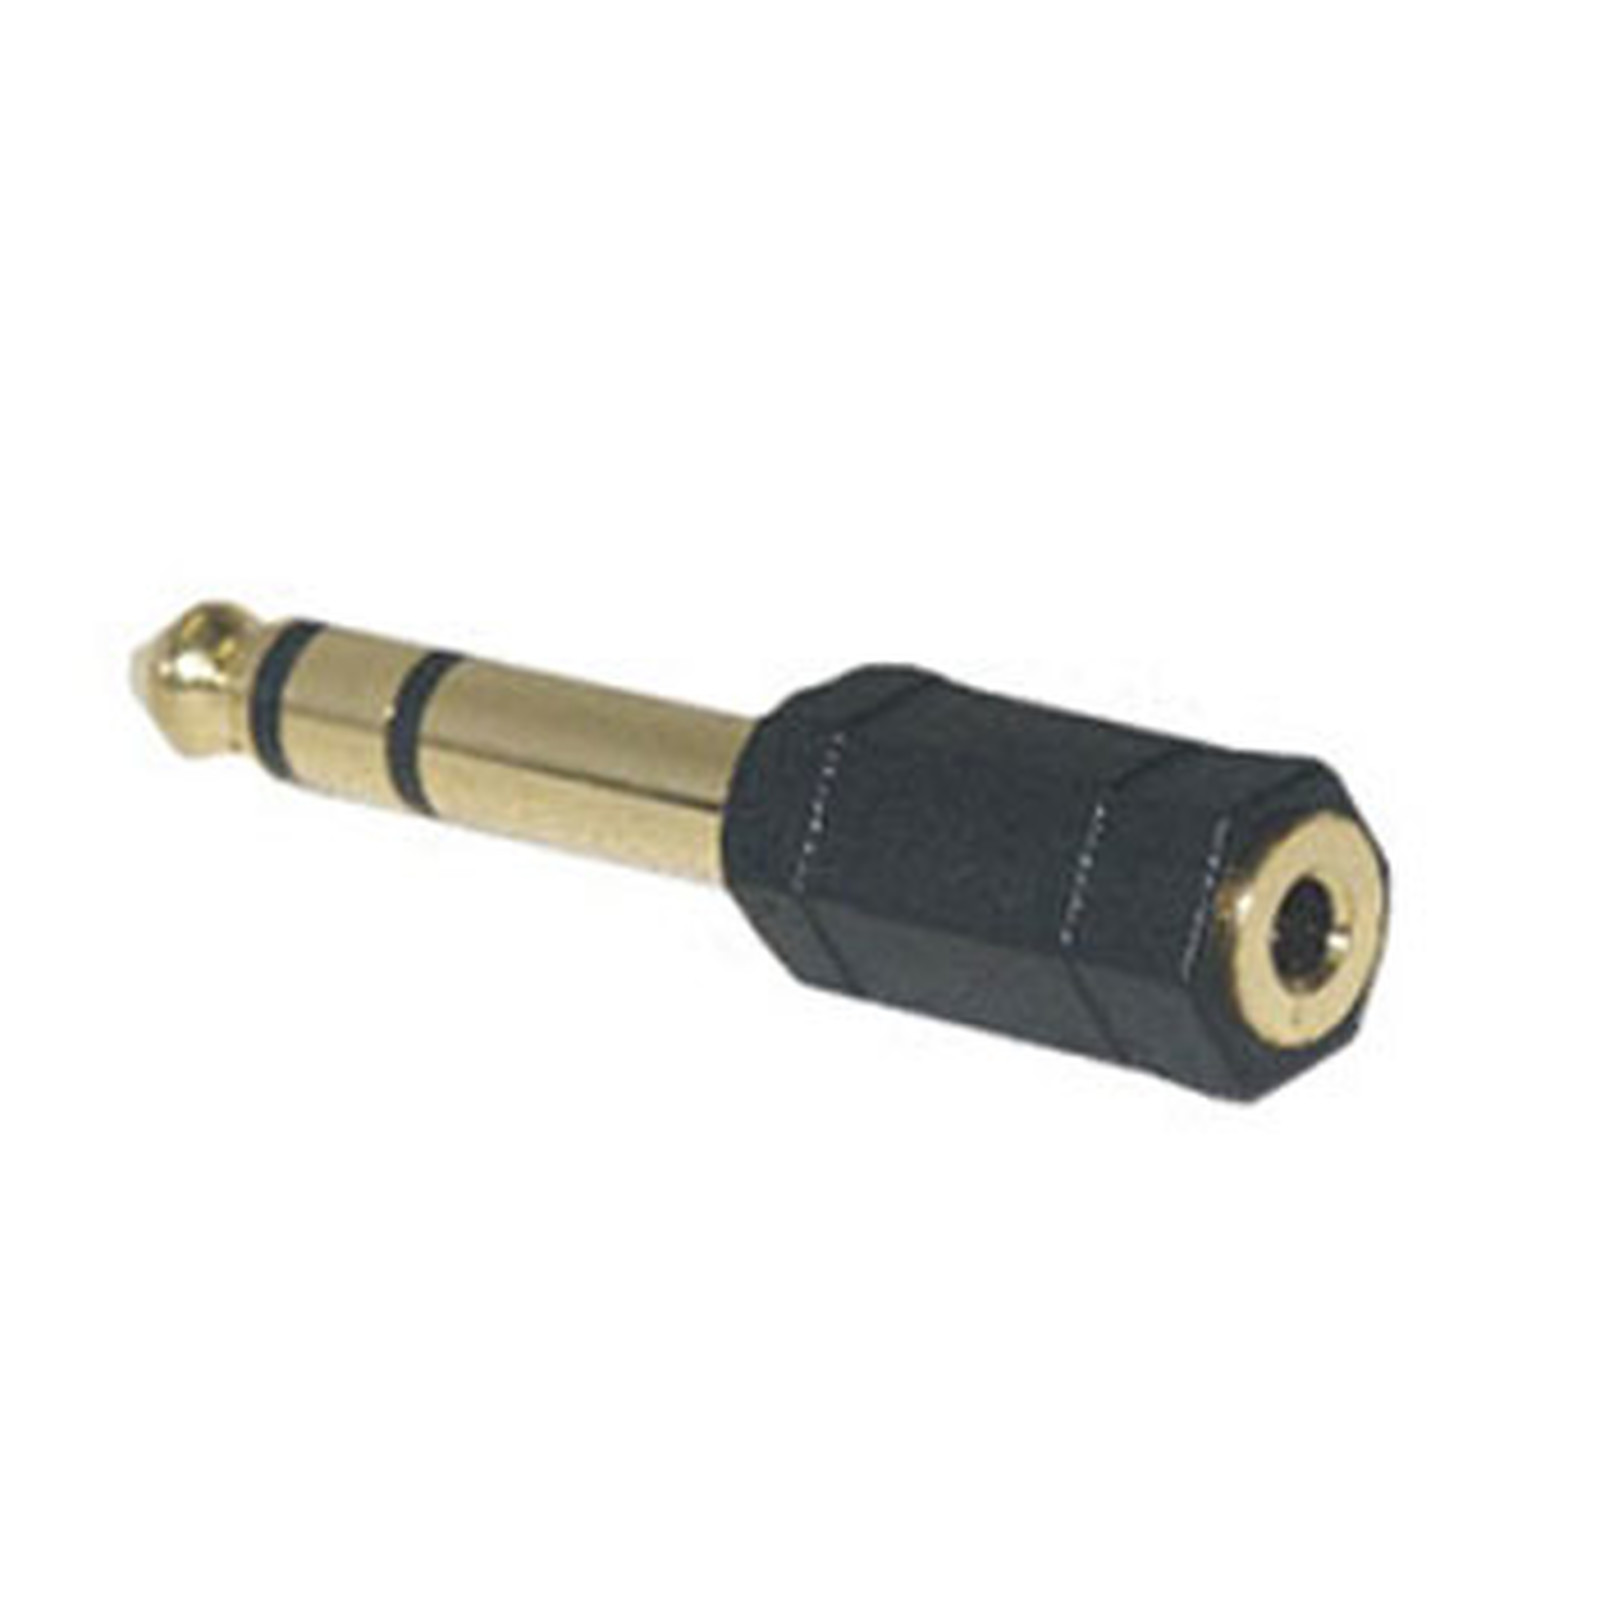 Adaptateur audio haute qualite Jack 6.35 mm male / 3.5 mm femelle - Cable audio Jack Generique